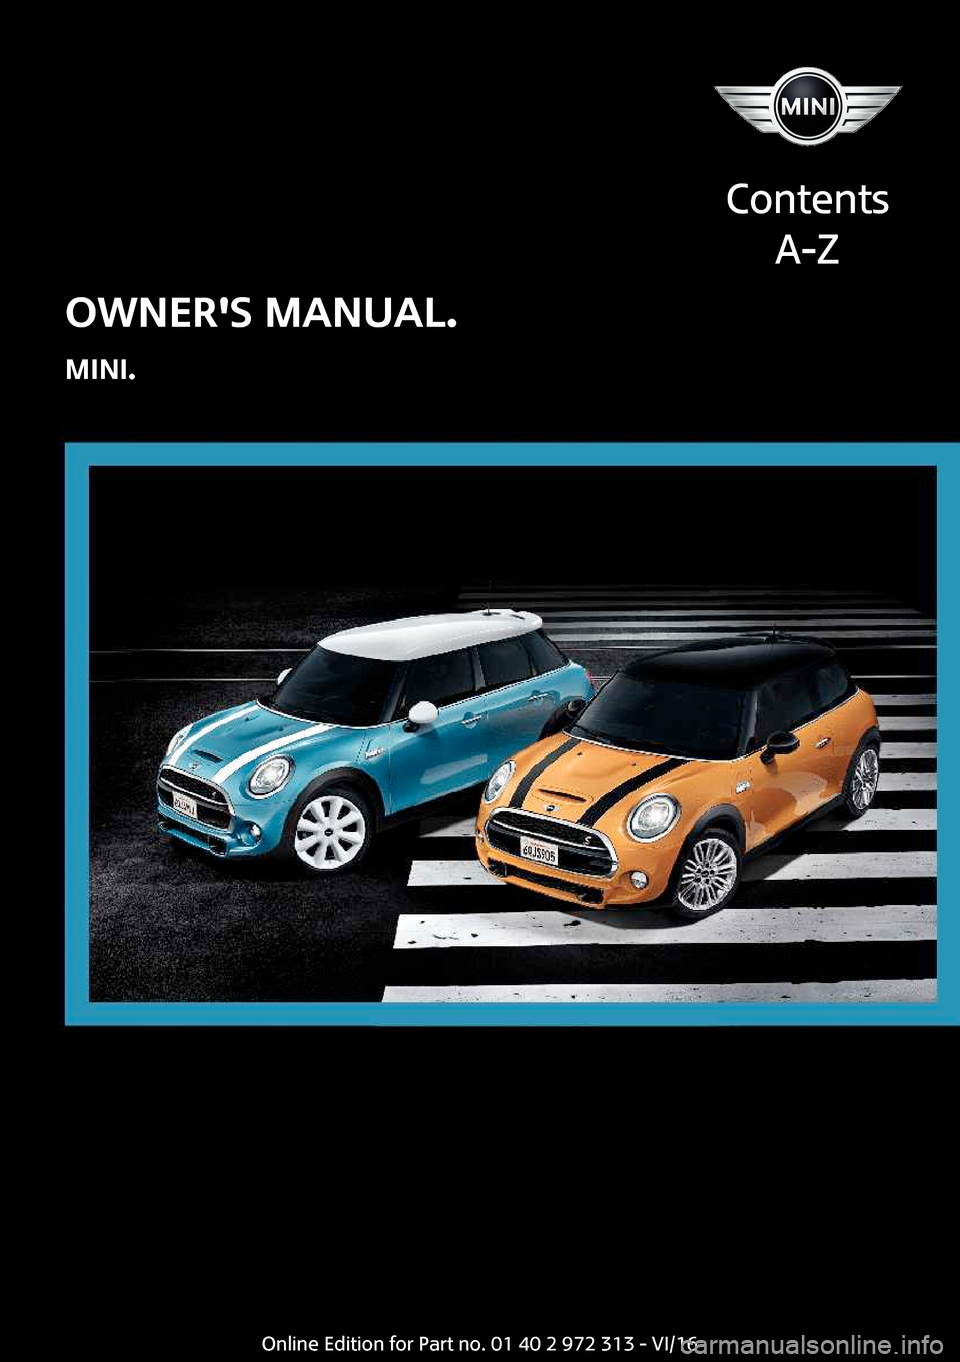 MINI 5 door 2016  Owners Manual �O�W�N�E�R��S��M�A�N�U�A�L�.
�M�I�N�I�.
�C�o�n�t�e�n�t�s �A�-�Z�O�n�l�i�n�e� �E�d�i�t�i�o�n� �f�o�r� �P�a�r�t� �n�o�.� �0�1� �4�0� �2� �9�7�2� �3�1�3� �-� �V�I�/�1�6  